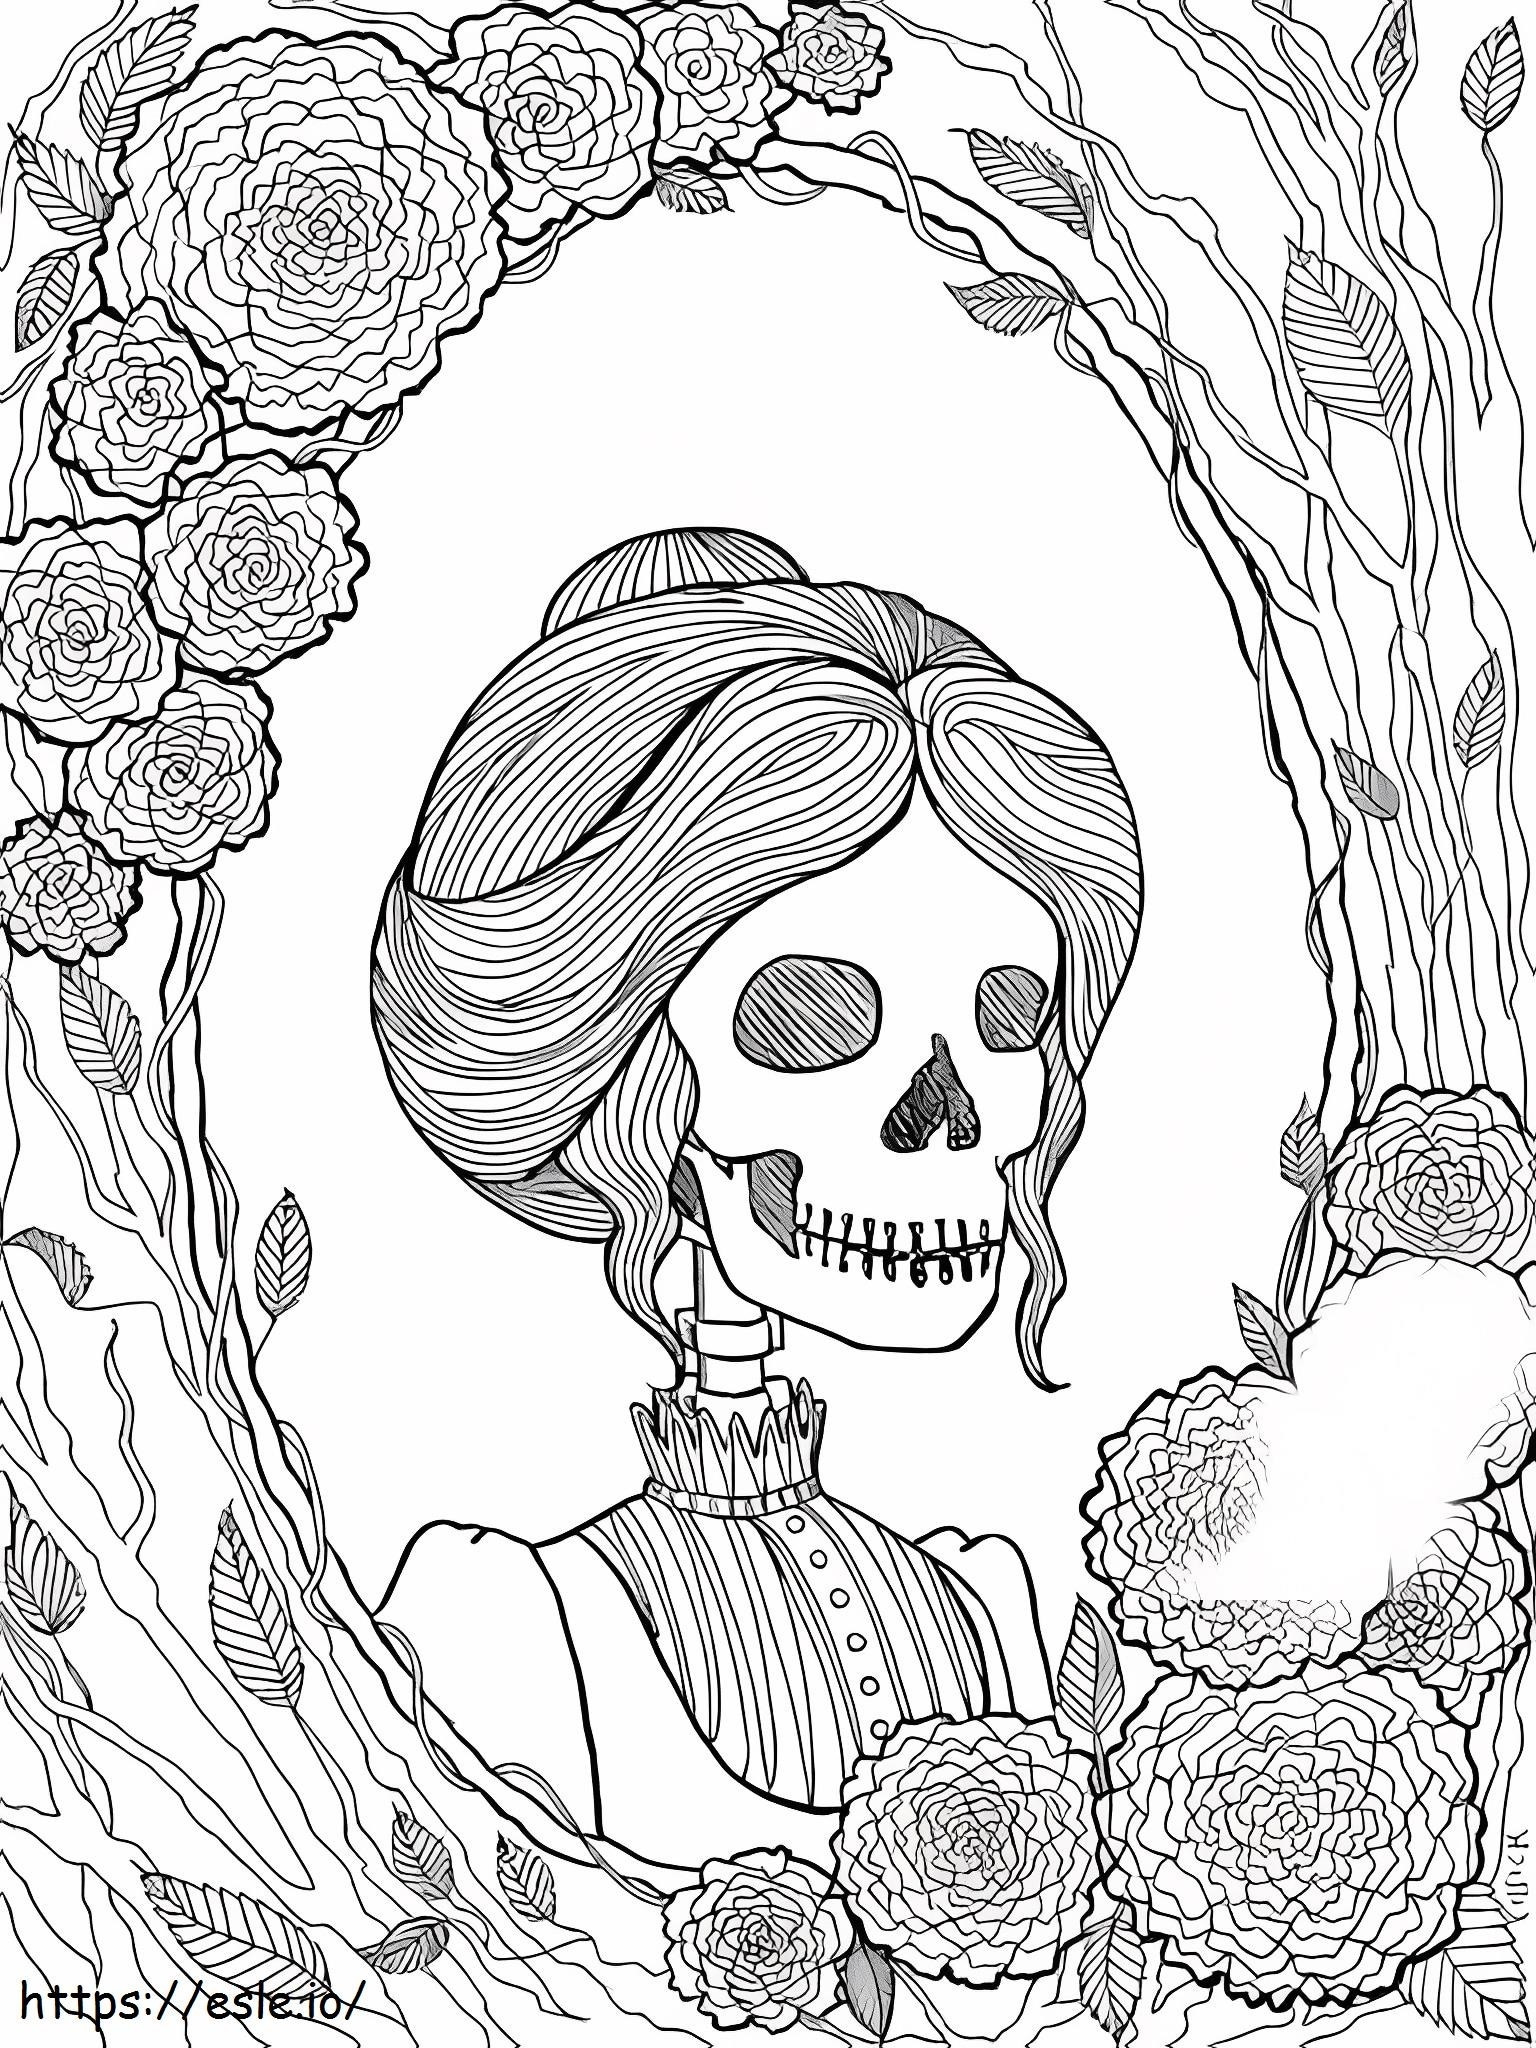 Esqueleto de garota assustadora para colorir